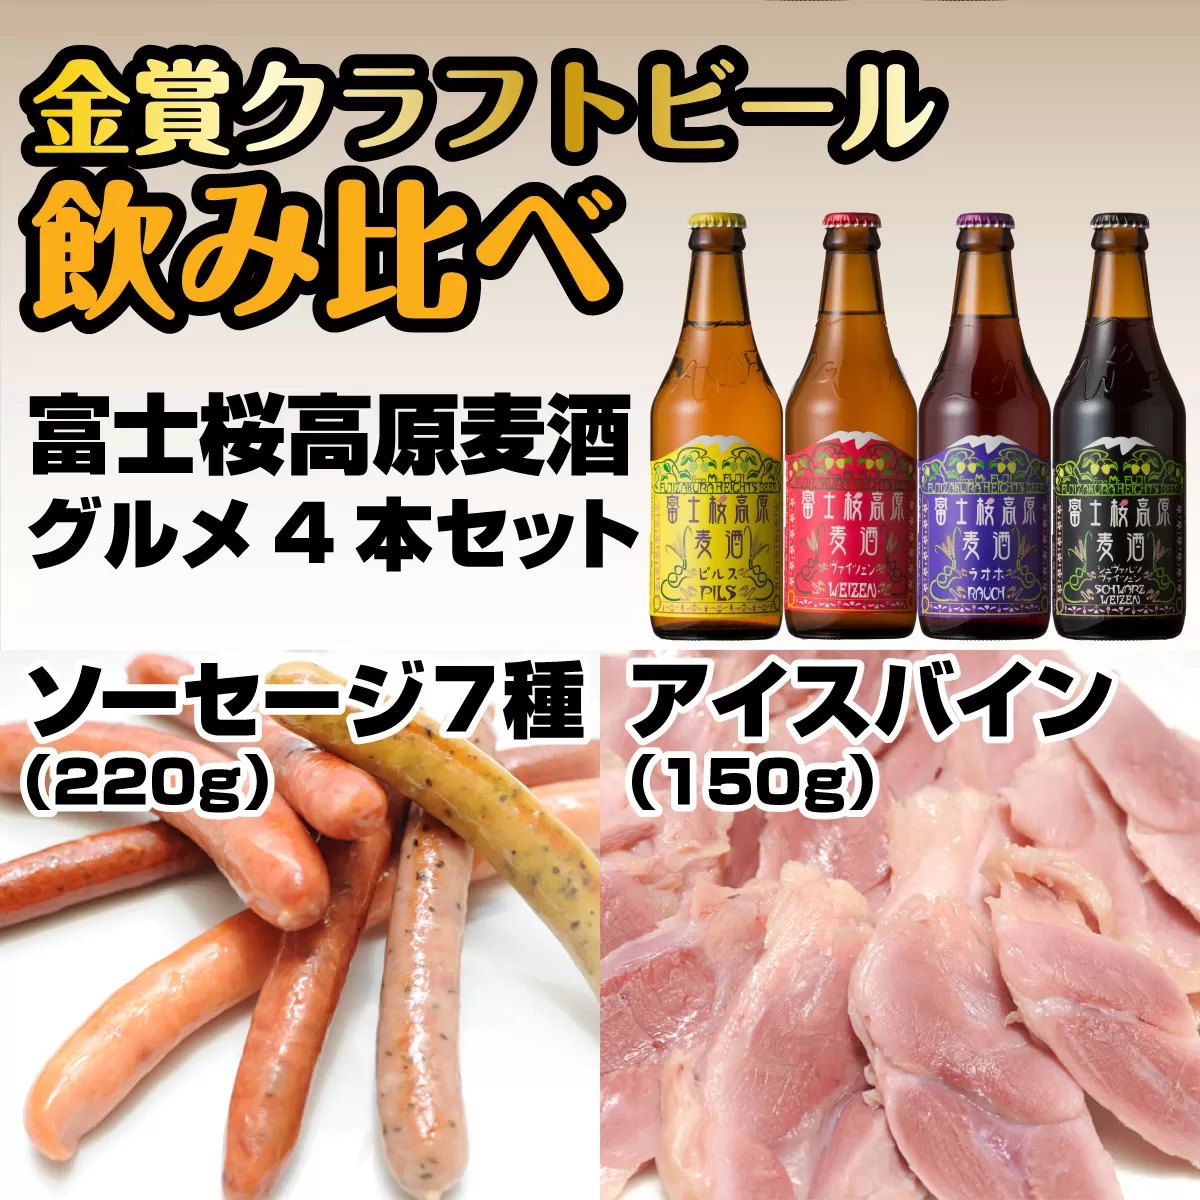 富士桜高原麦酒グルメ4本セット 金賞クラフトビール飲み比べ FAD010